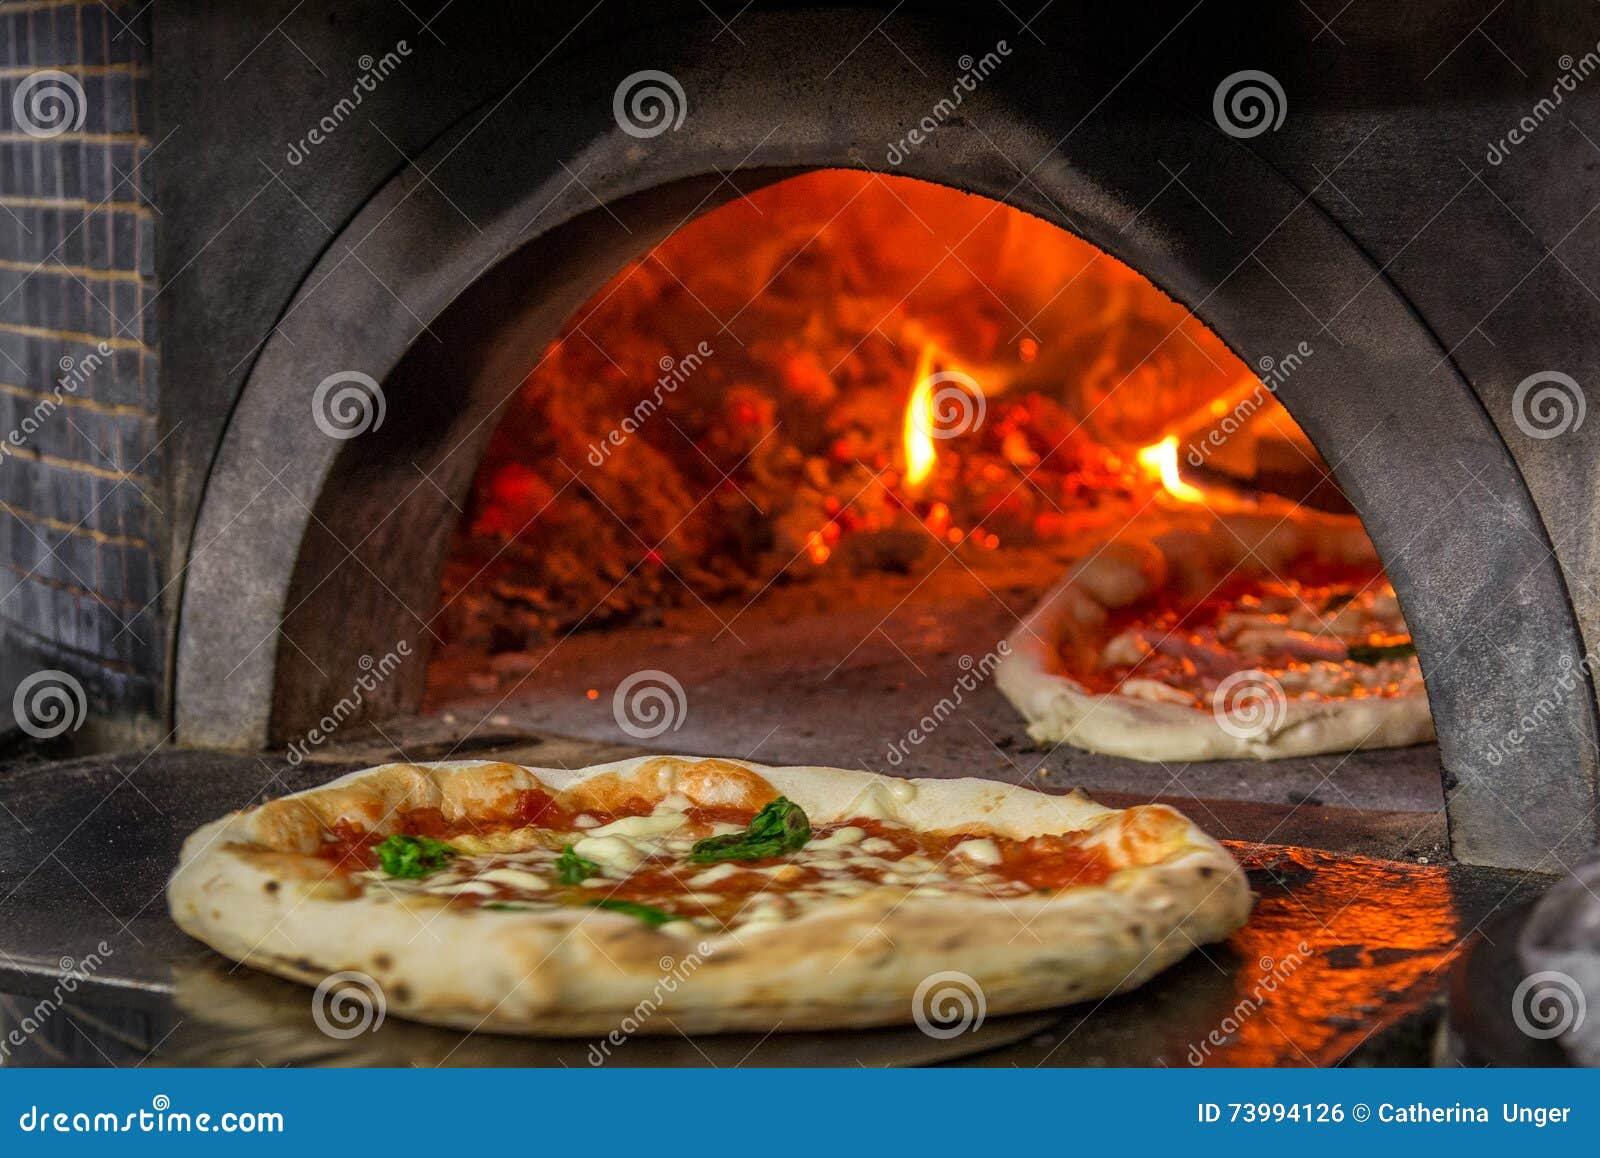 Matera Small Pizza Oven